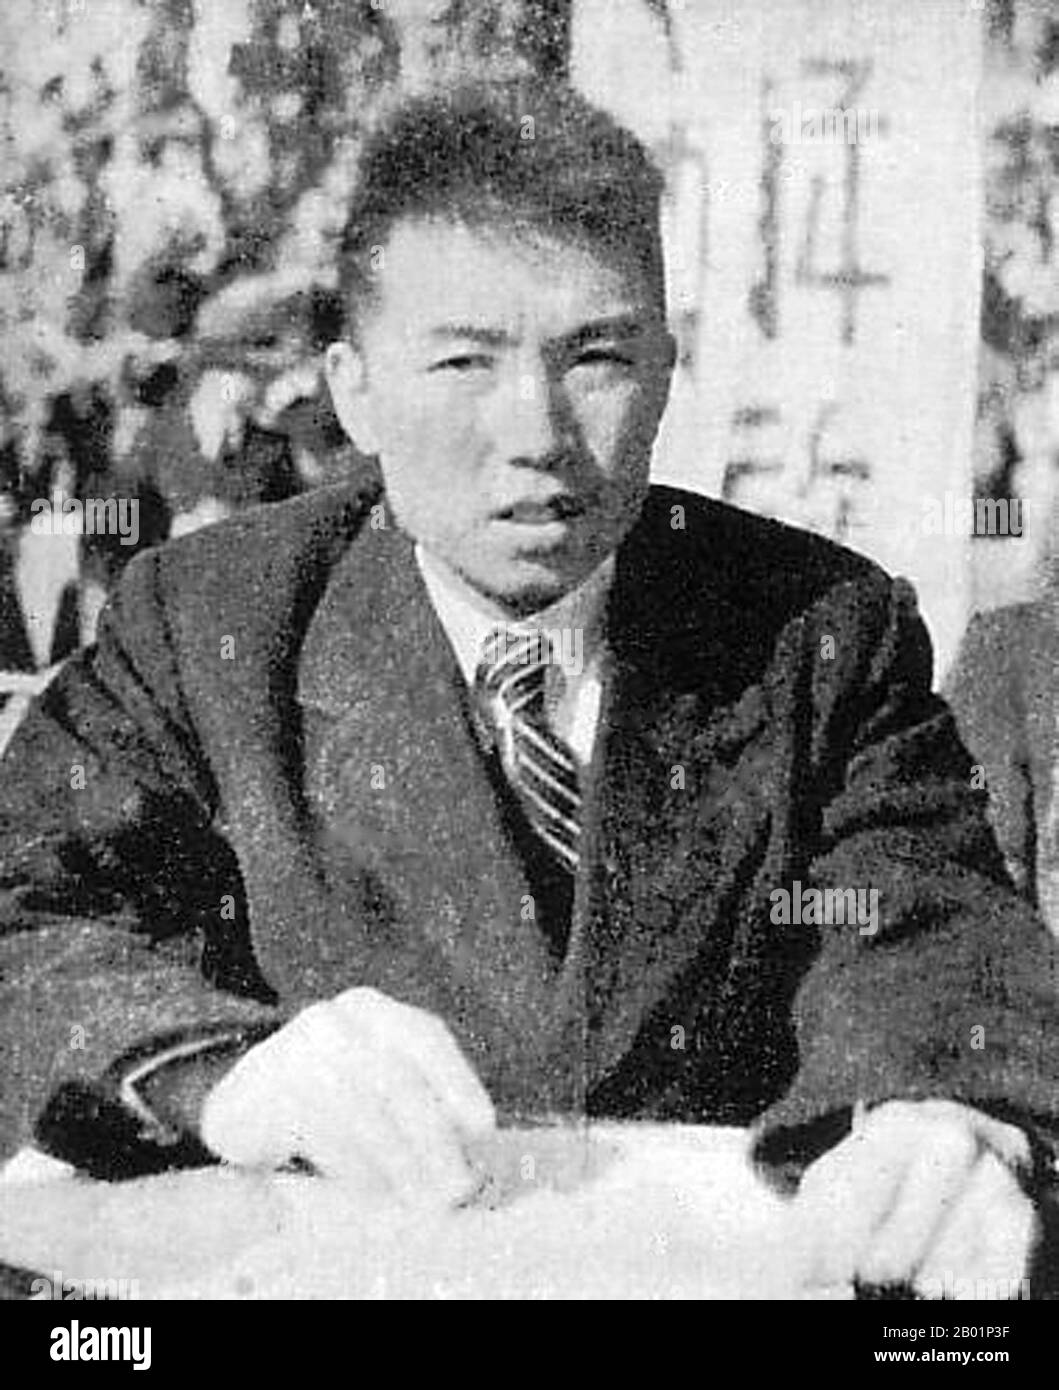 Corée : Kim il Sung (15 avril 1912 - 8 juillet 1994), futur dirigeant suprême de la Corée du Nord (République populaire démocratique de Corée, RPDC), probablement en extrême-Orient russe, 1946. Kim il-sung était un homme politique communiste coréen qui dirigea la Corée du Nord, officiellement la République populaire démocratique de Corée, depuis sa création en 1948 jusqu'à sa mort en 1994. Il occupe les postes de Premier ministre de 1948 à 1972 et de Président de 1972 à sa mort. Il est également le chef du Parti des travailleurs de Corée de 1949 à 1994 (nommé président de 1949 à 1966 et secrétaire général après 1966). Banque D'Images